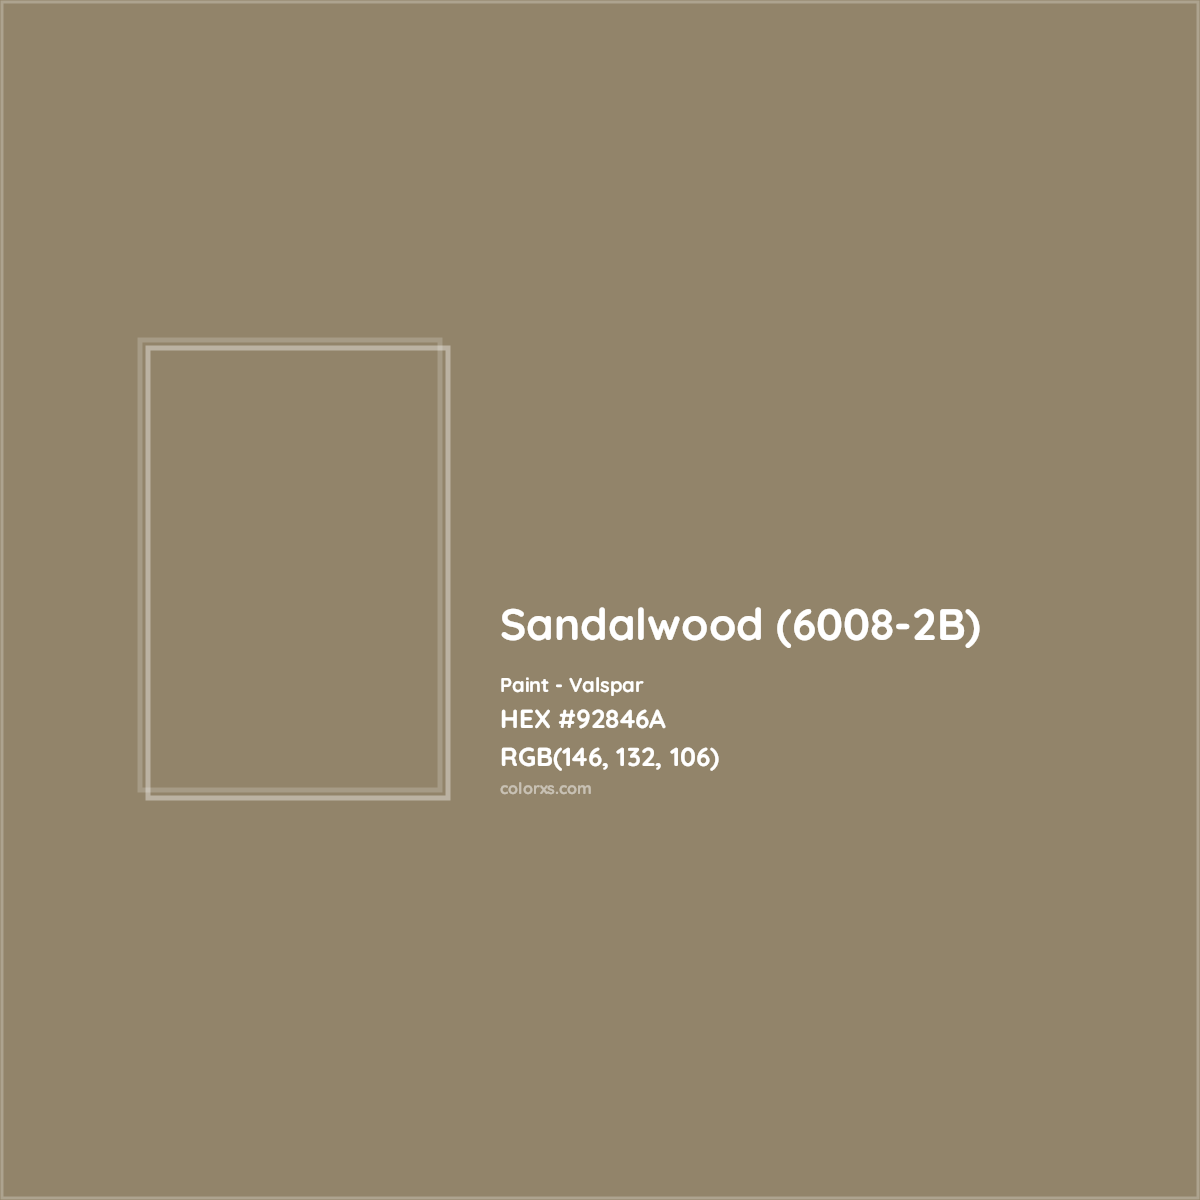 HEX #92846A Sandalwood (6008-2B) Paint Valspar - Color Code